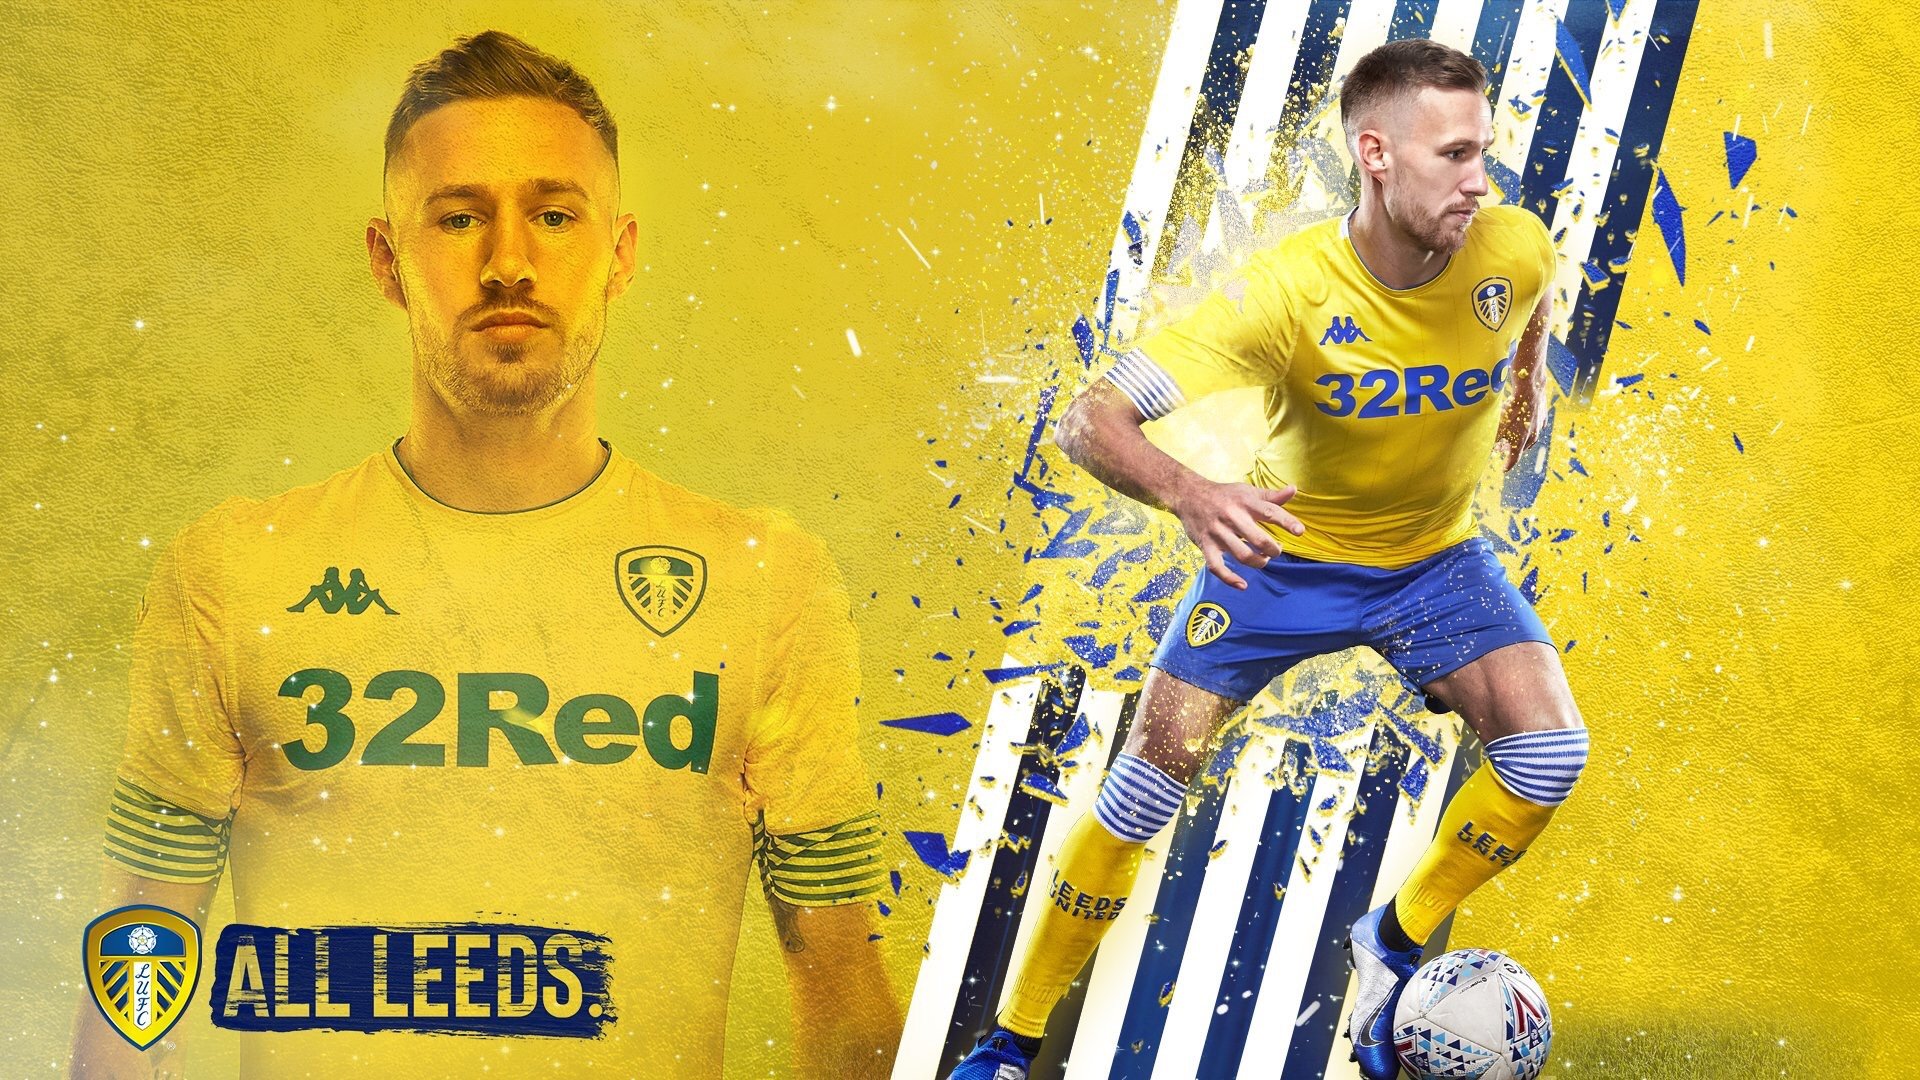 Leeds United Squad 2018 19 - HD Wallpaper 